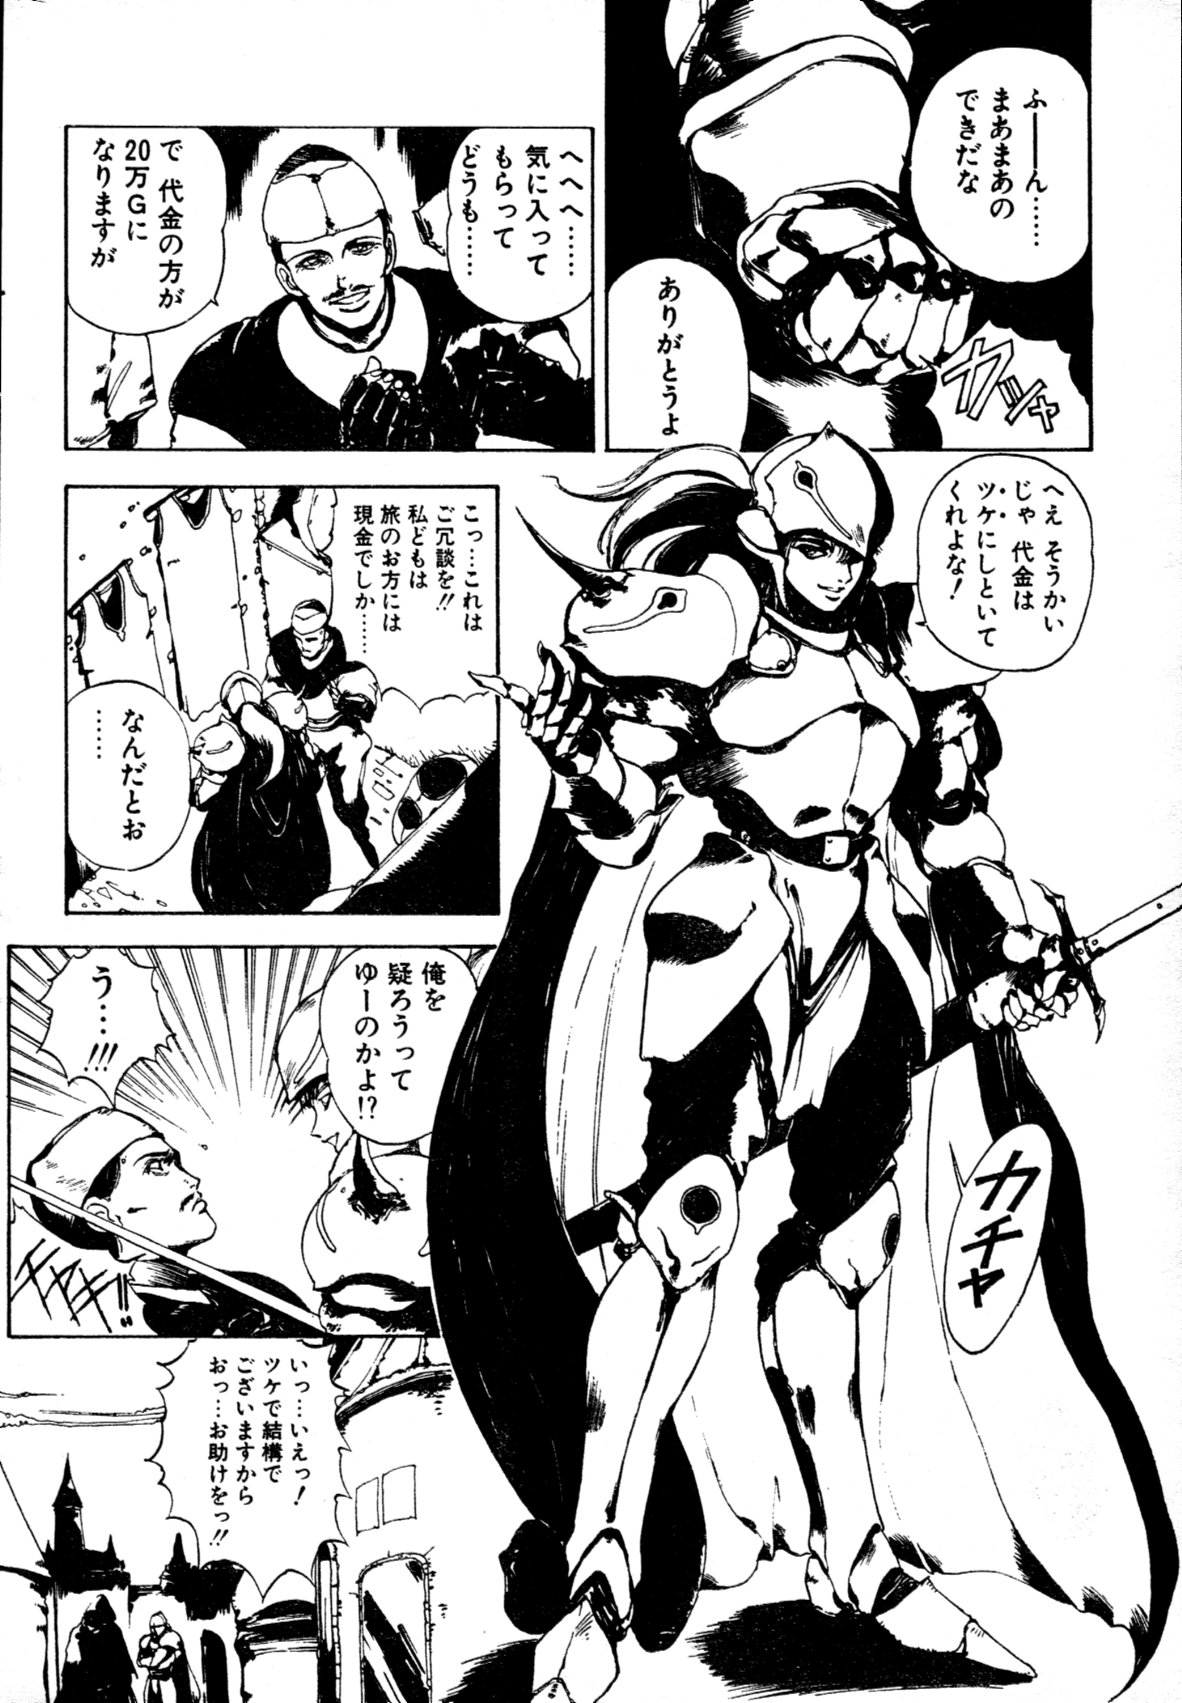 [雑誌] COMIC ペンギンクラブ山賊版 1991年12月号増刊 NARCIS3 幻超二&飛龍乱特集号